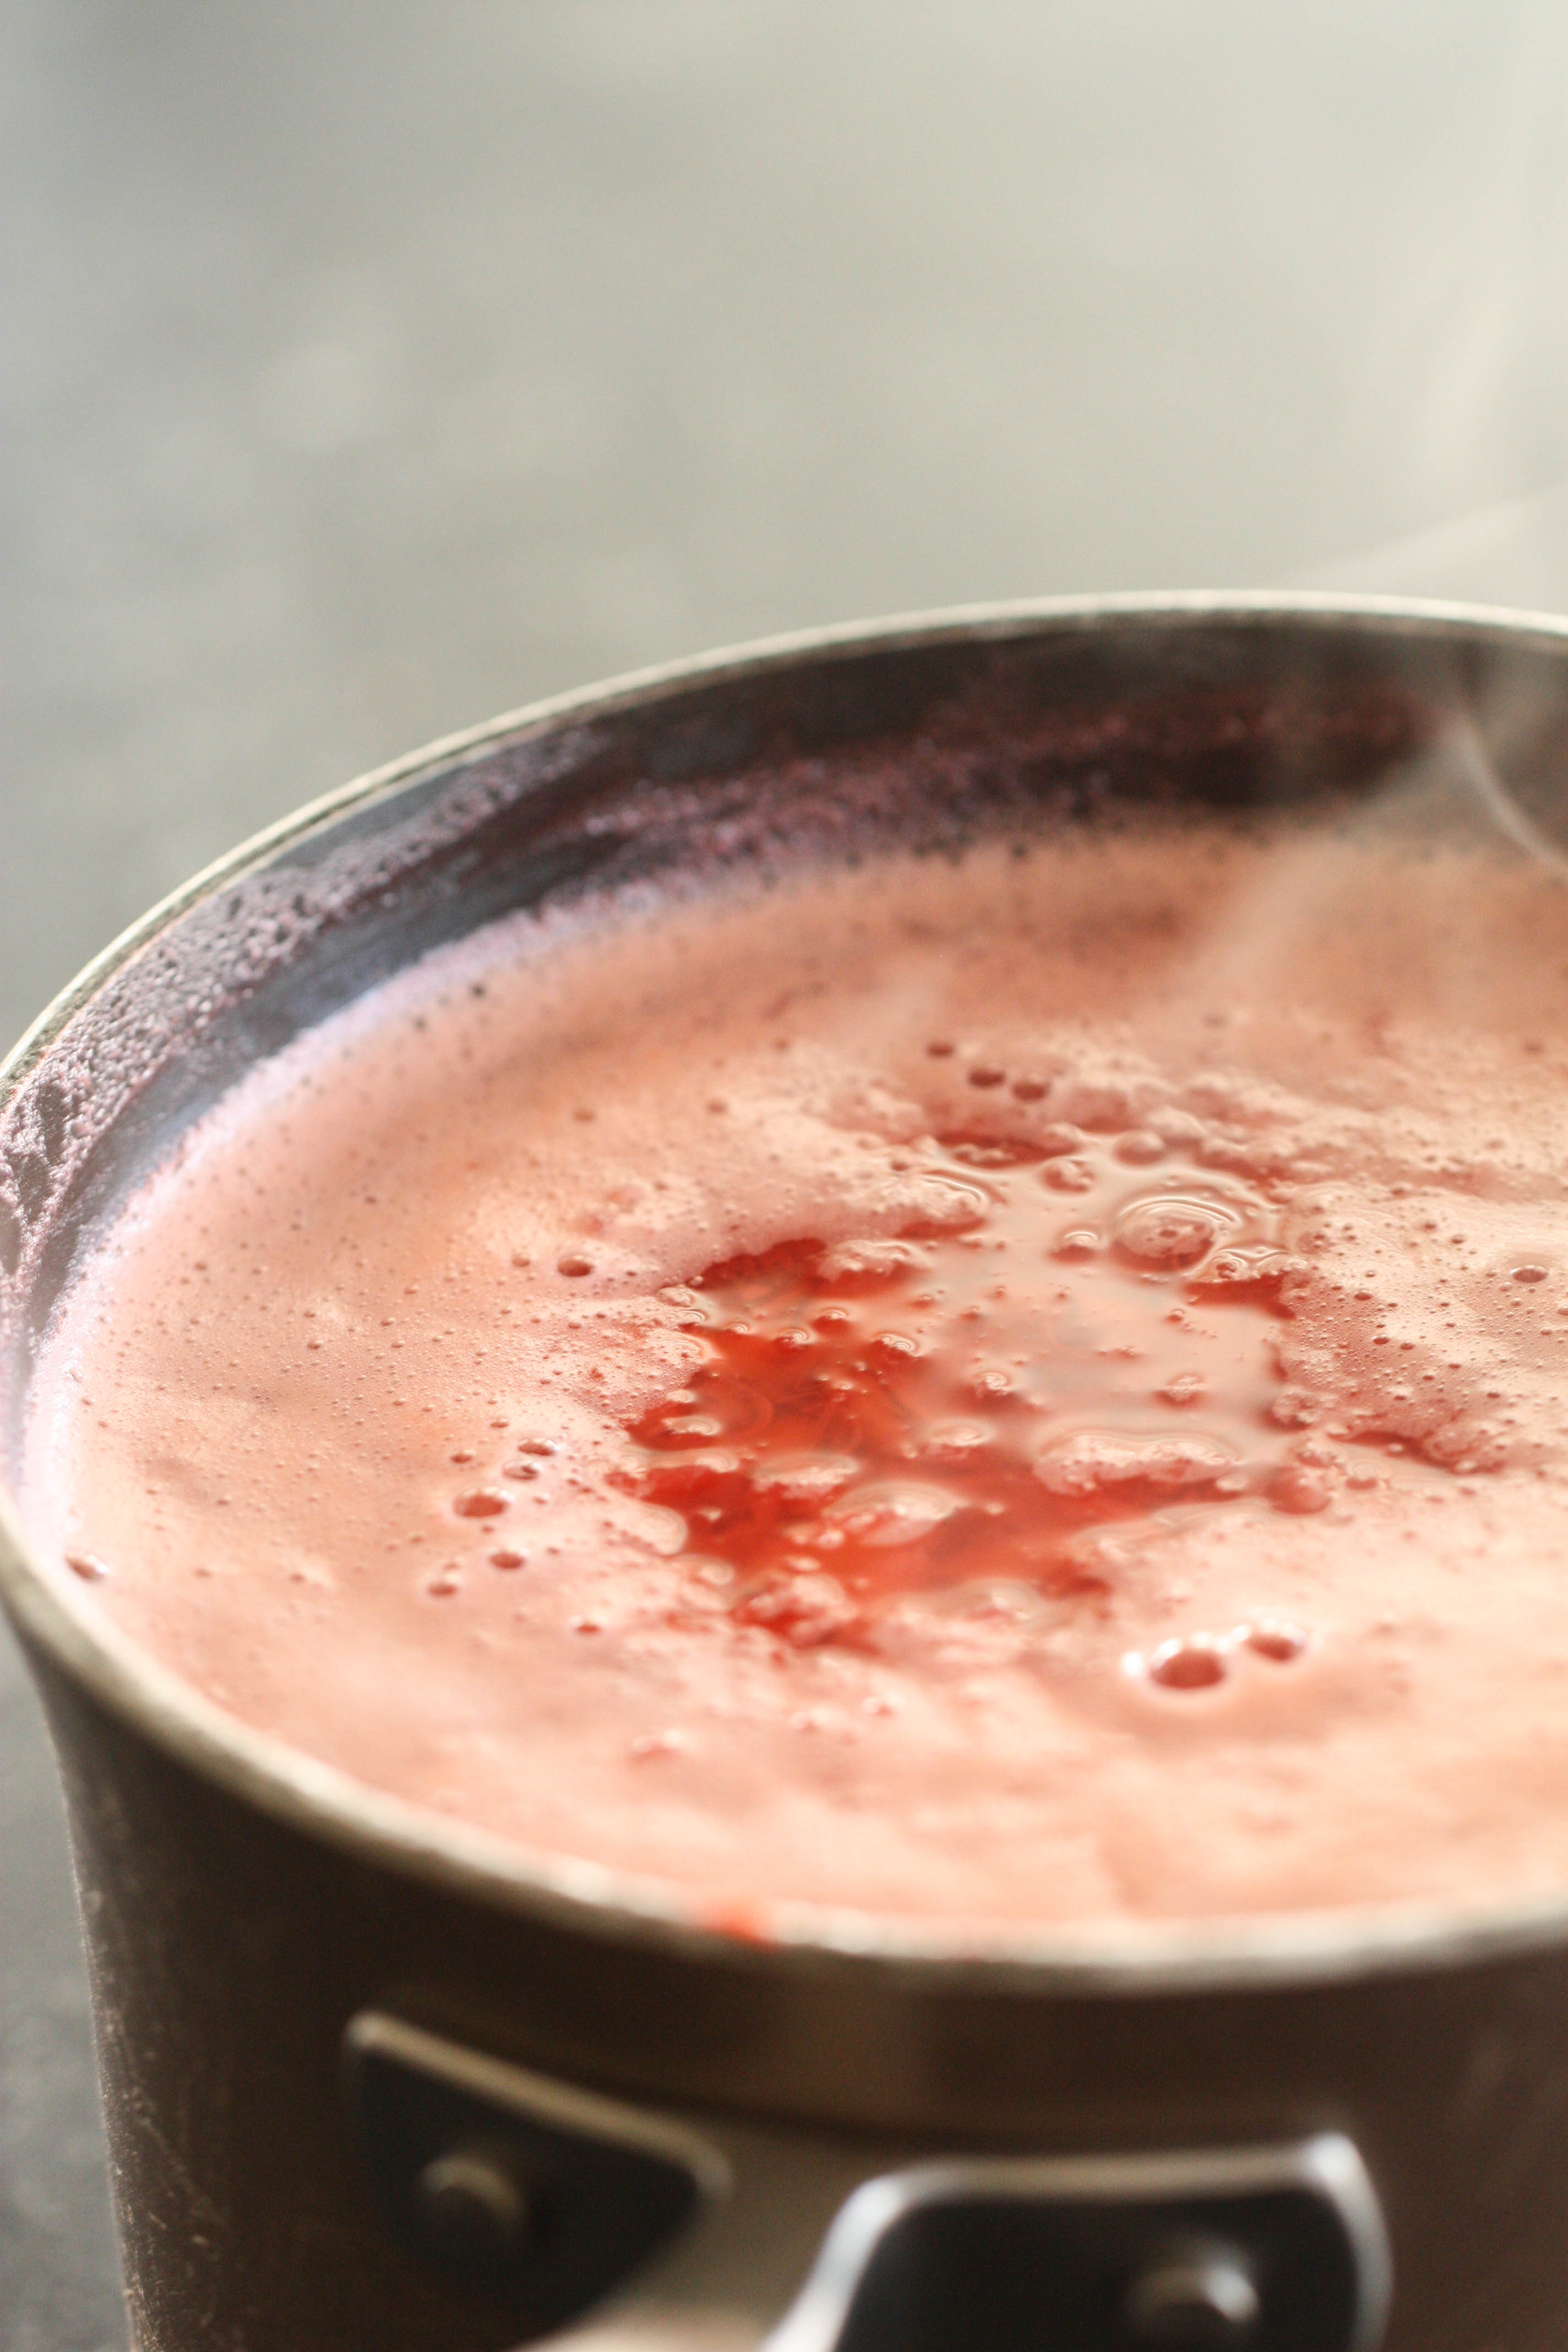 Strawberry Slush mixture in a saucepan